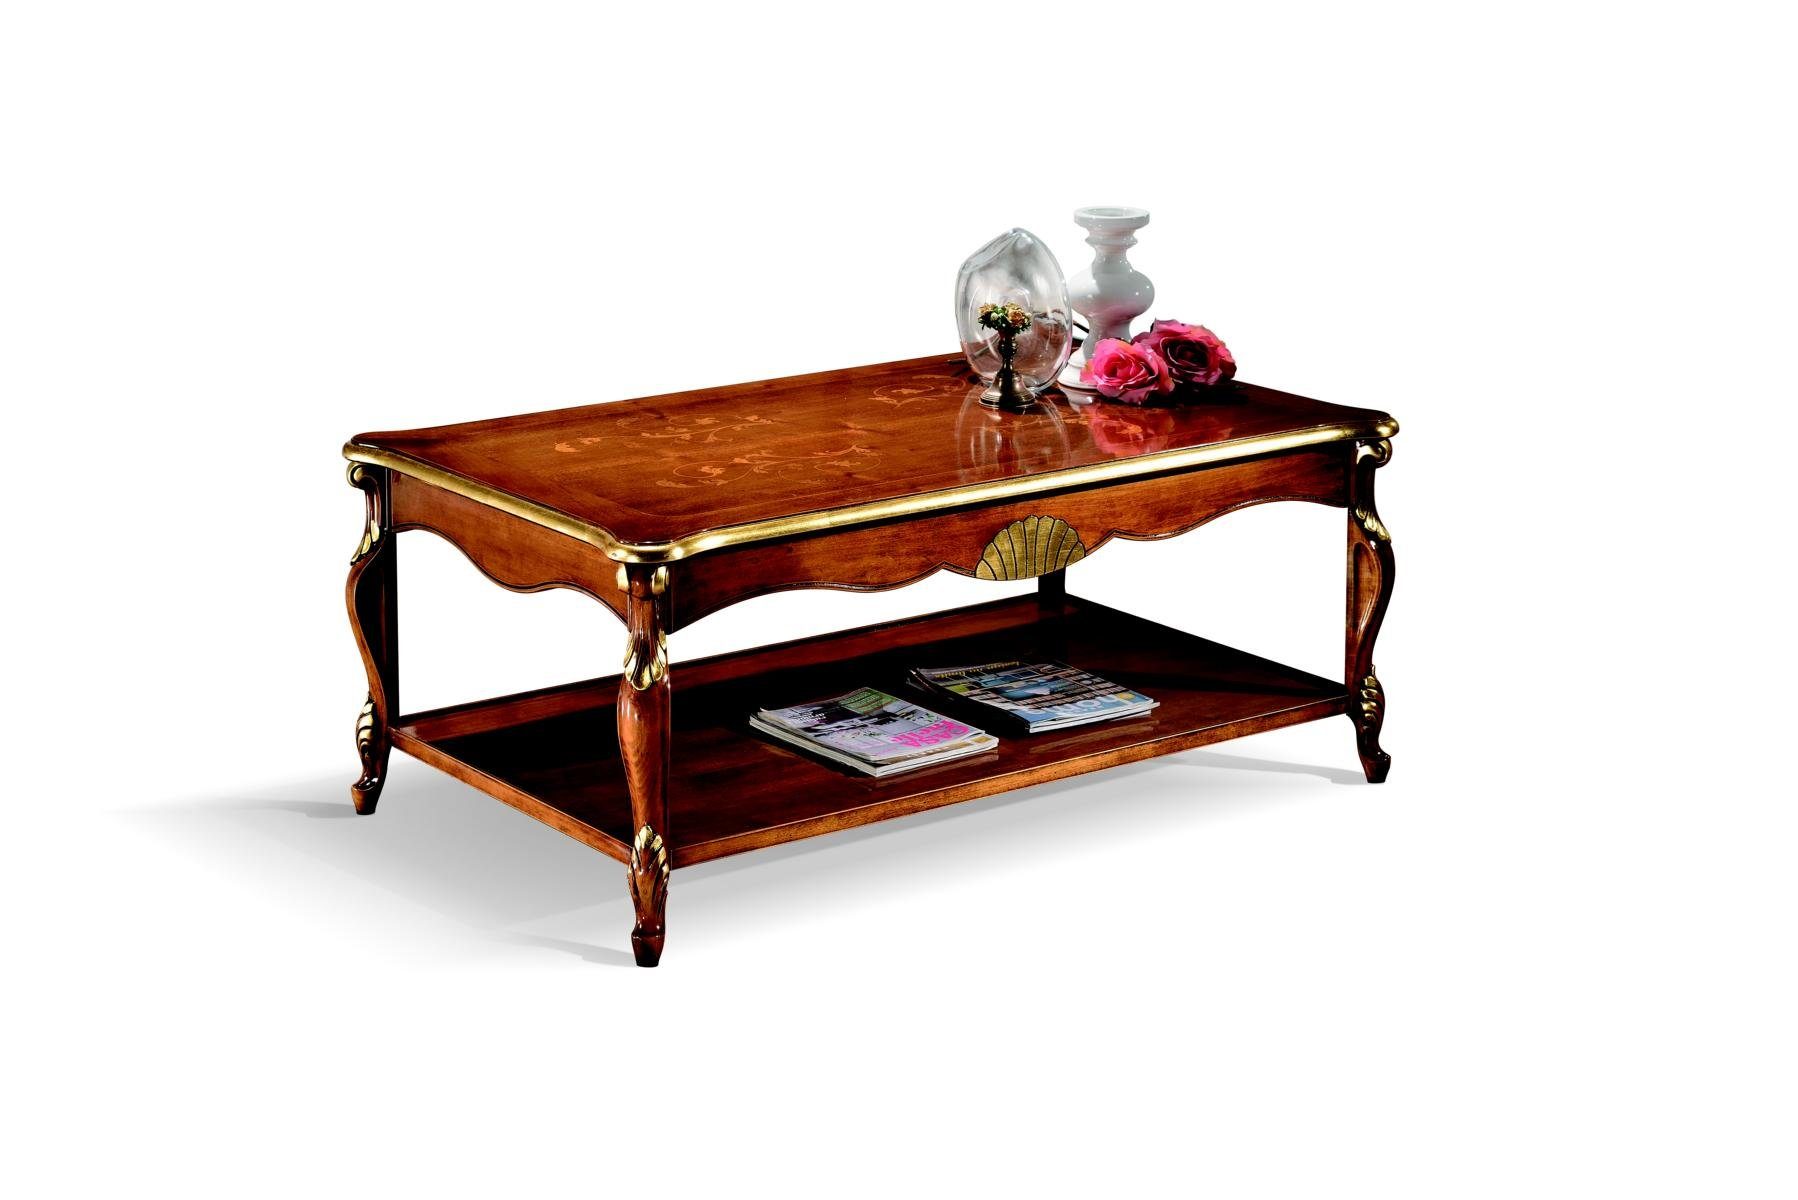 JVmoebel Couchtisch Holz Italienische Möbel Barock Stil Luxus Braun Couchtisch Wohnzimmer Tisch